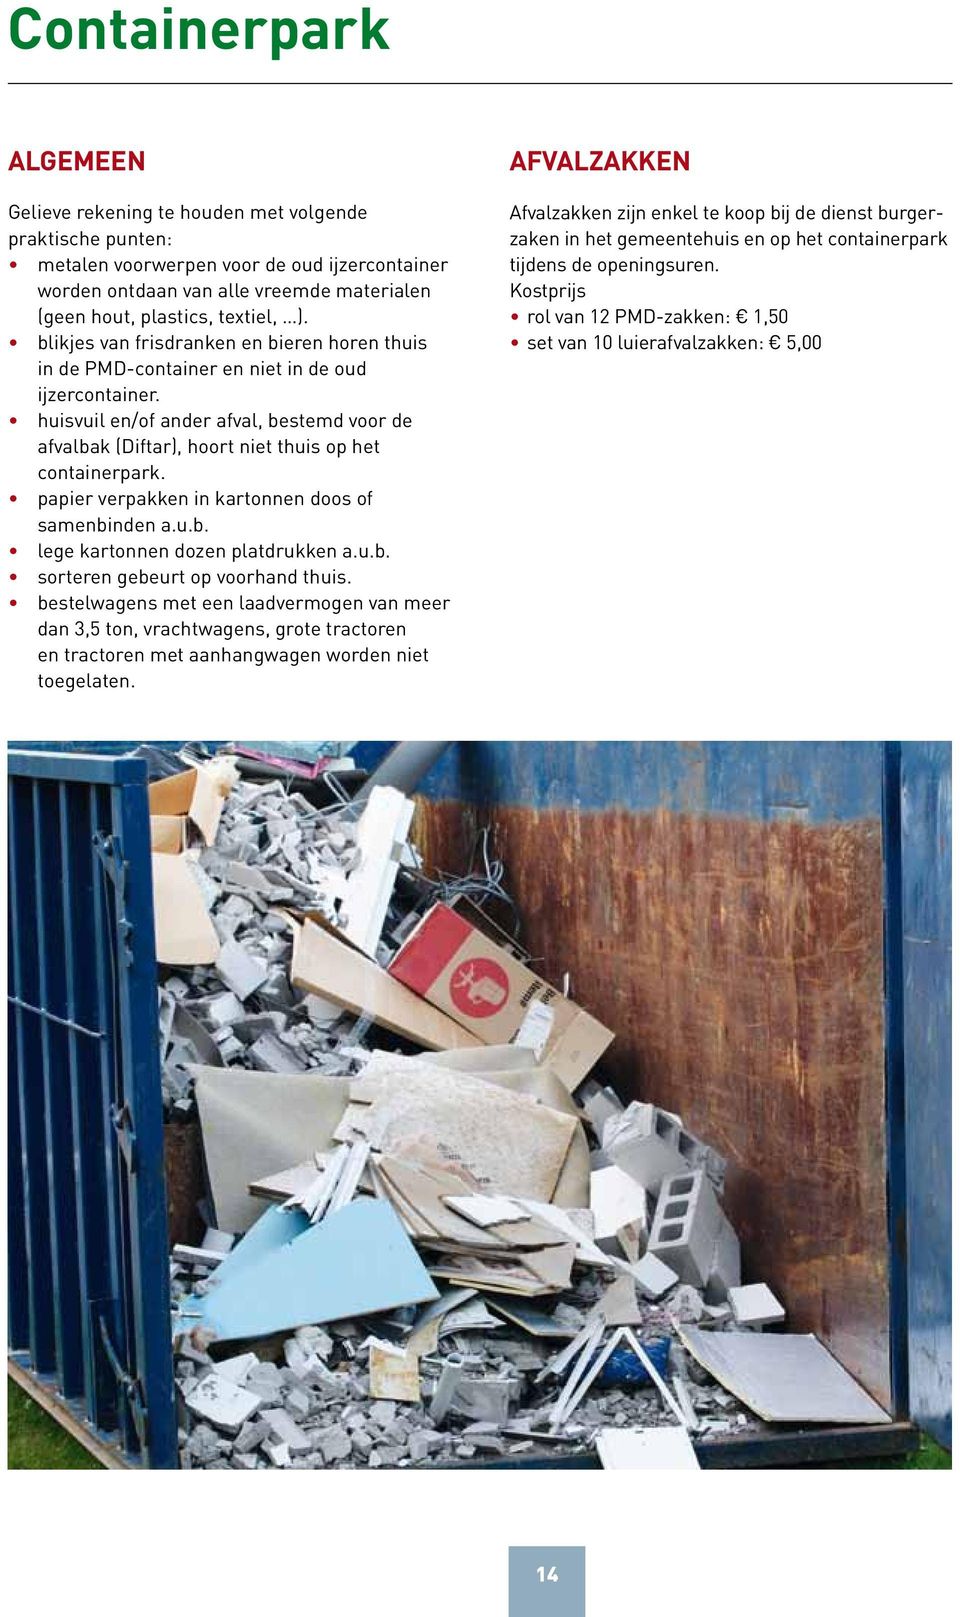 huisvuil en/of ander afval, bestemd voor de afvalbak (Diftar), hoort niet thuis op het containerpark. papier verpakken in kartonnen doos of samenbinden a.u.b. lege kartonnen dozen platdrukken a.u.b. sorteren gebeurt op voorhand thuis.